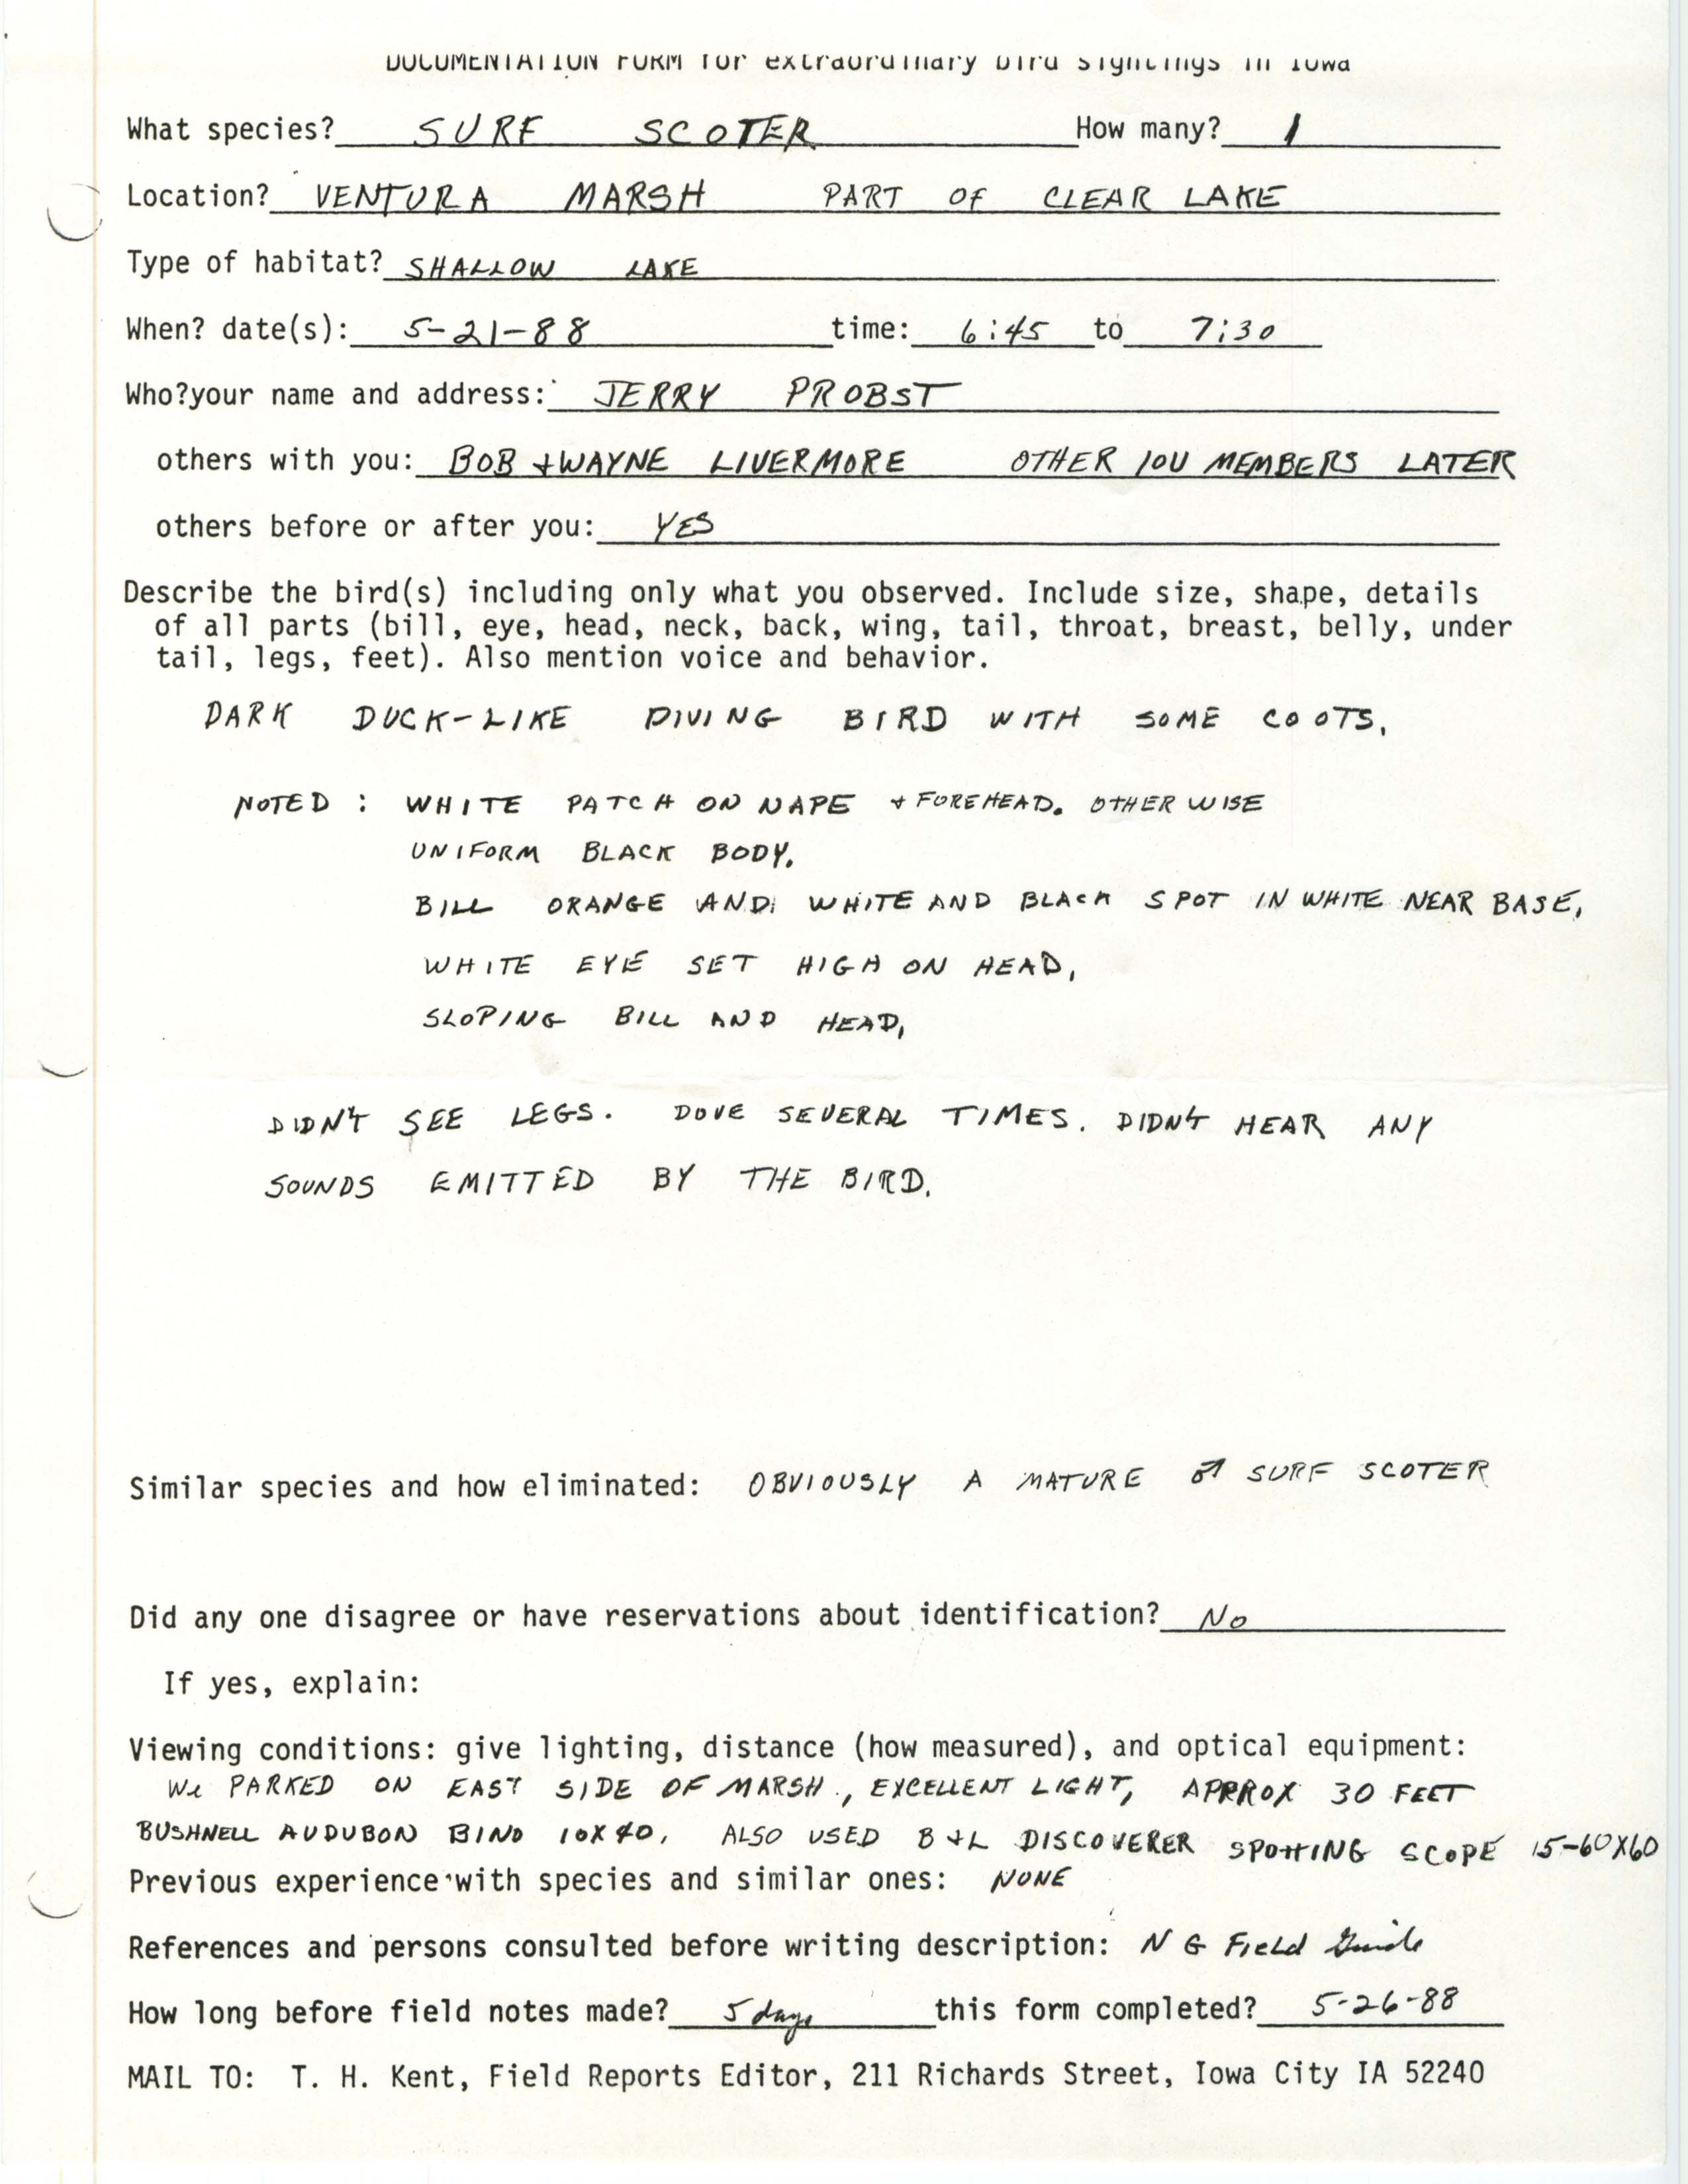 Rare bird documentation form for Surf Scoter at Ventura Marsh, 1988